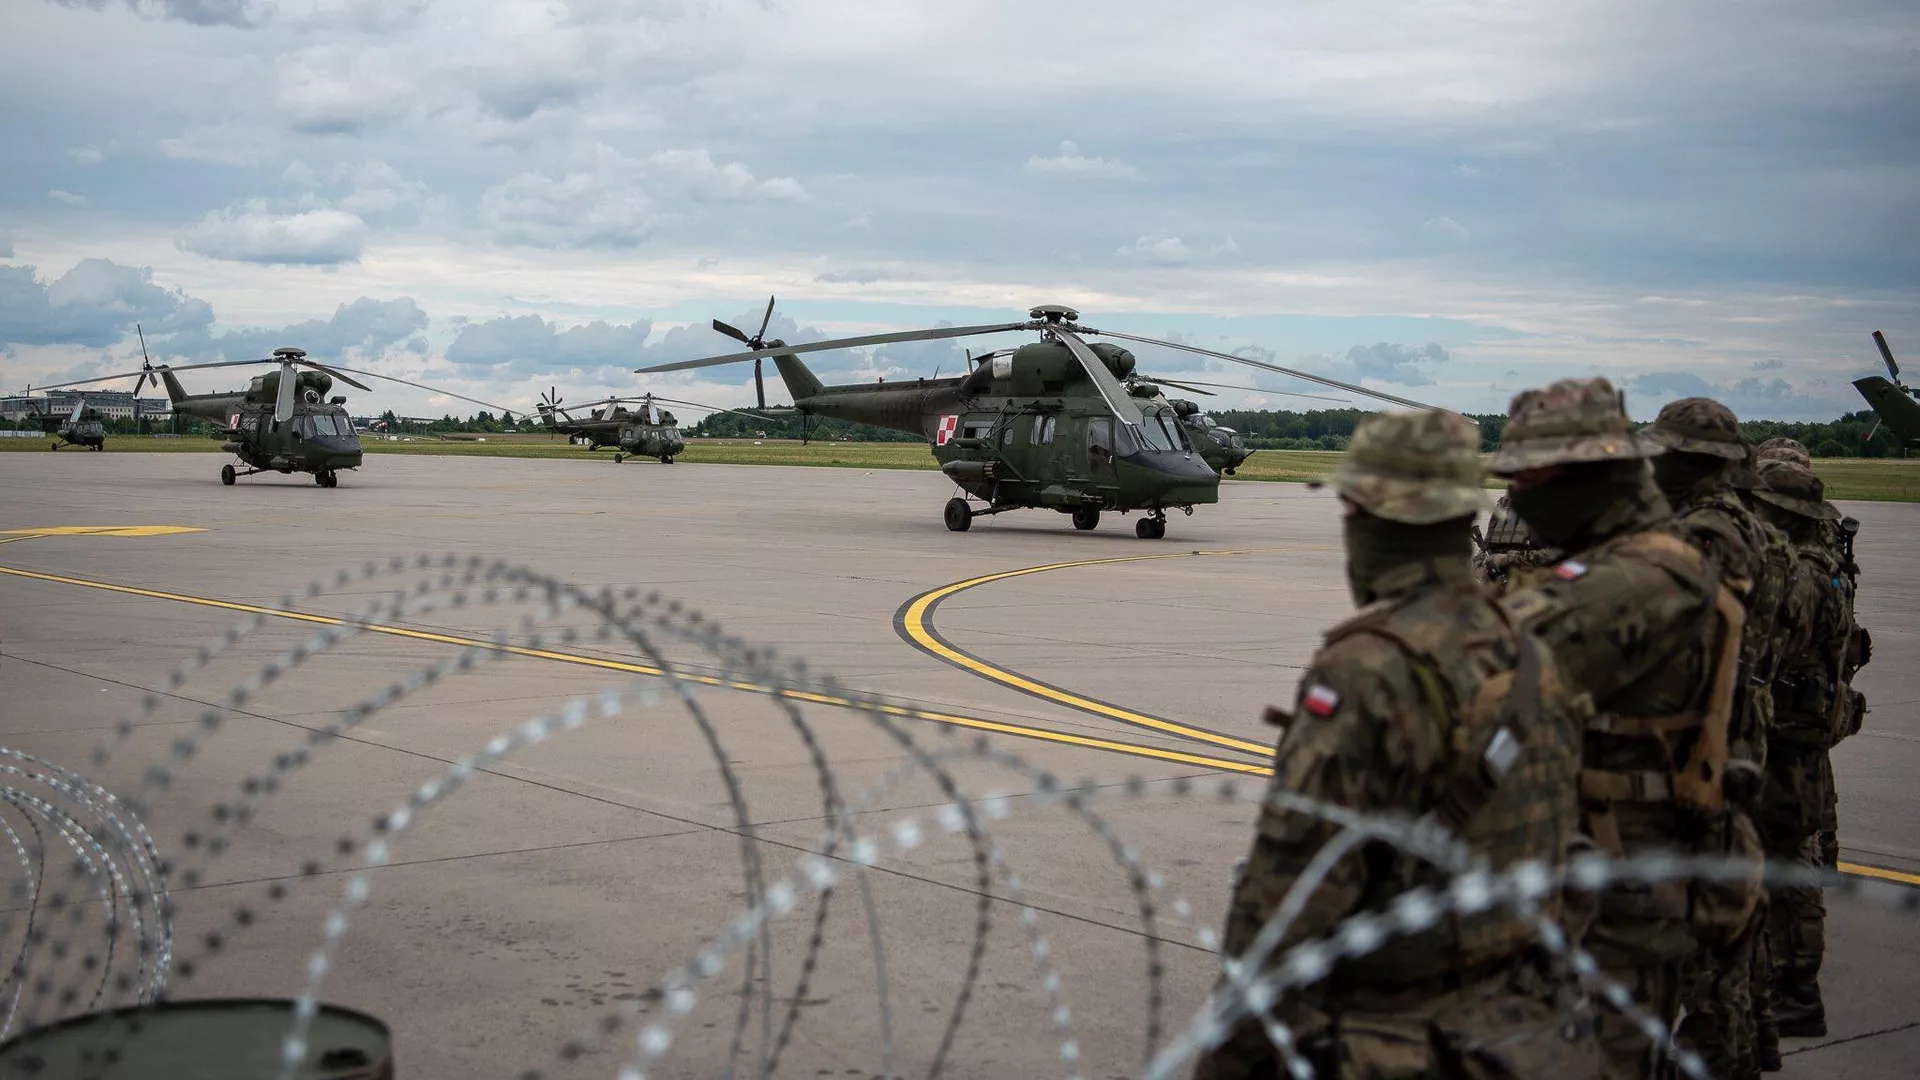 Польша начала фортификационные работы на границе с Белоруссией